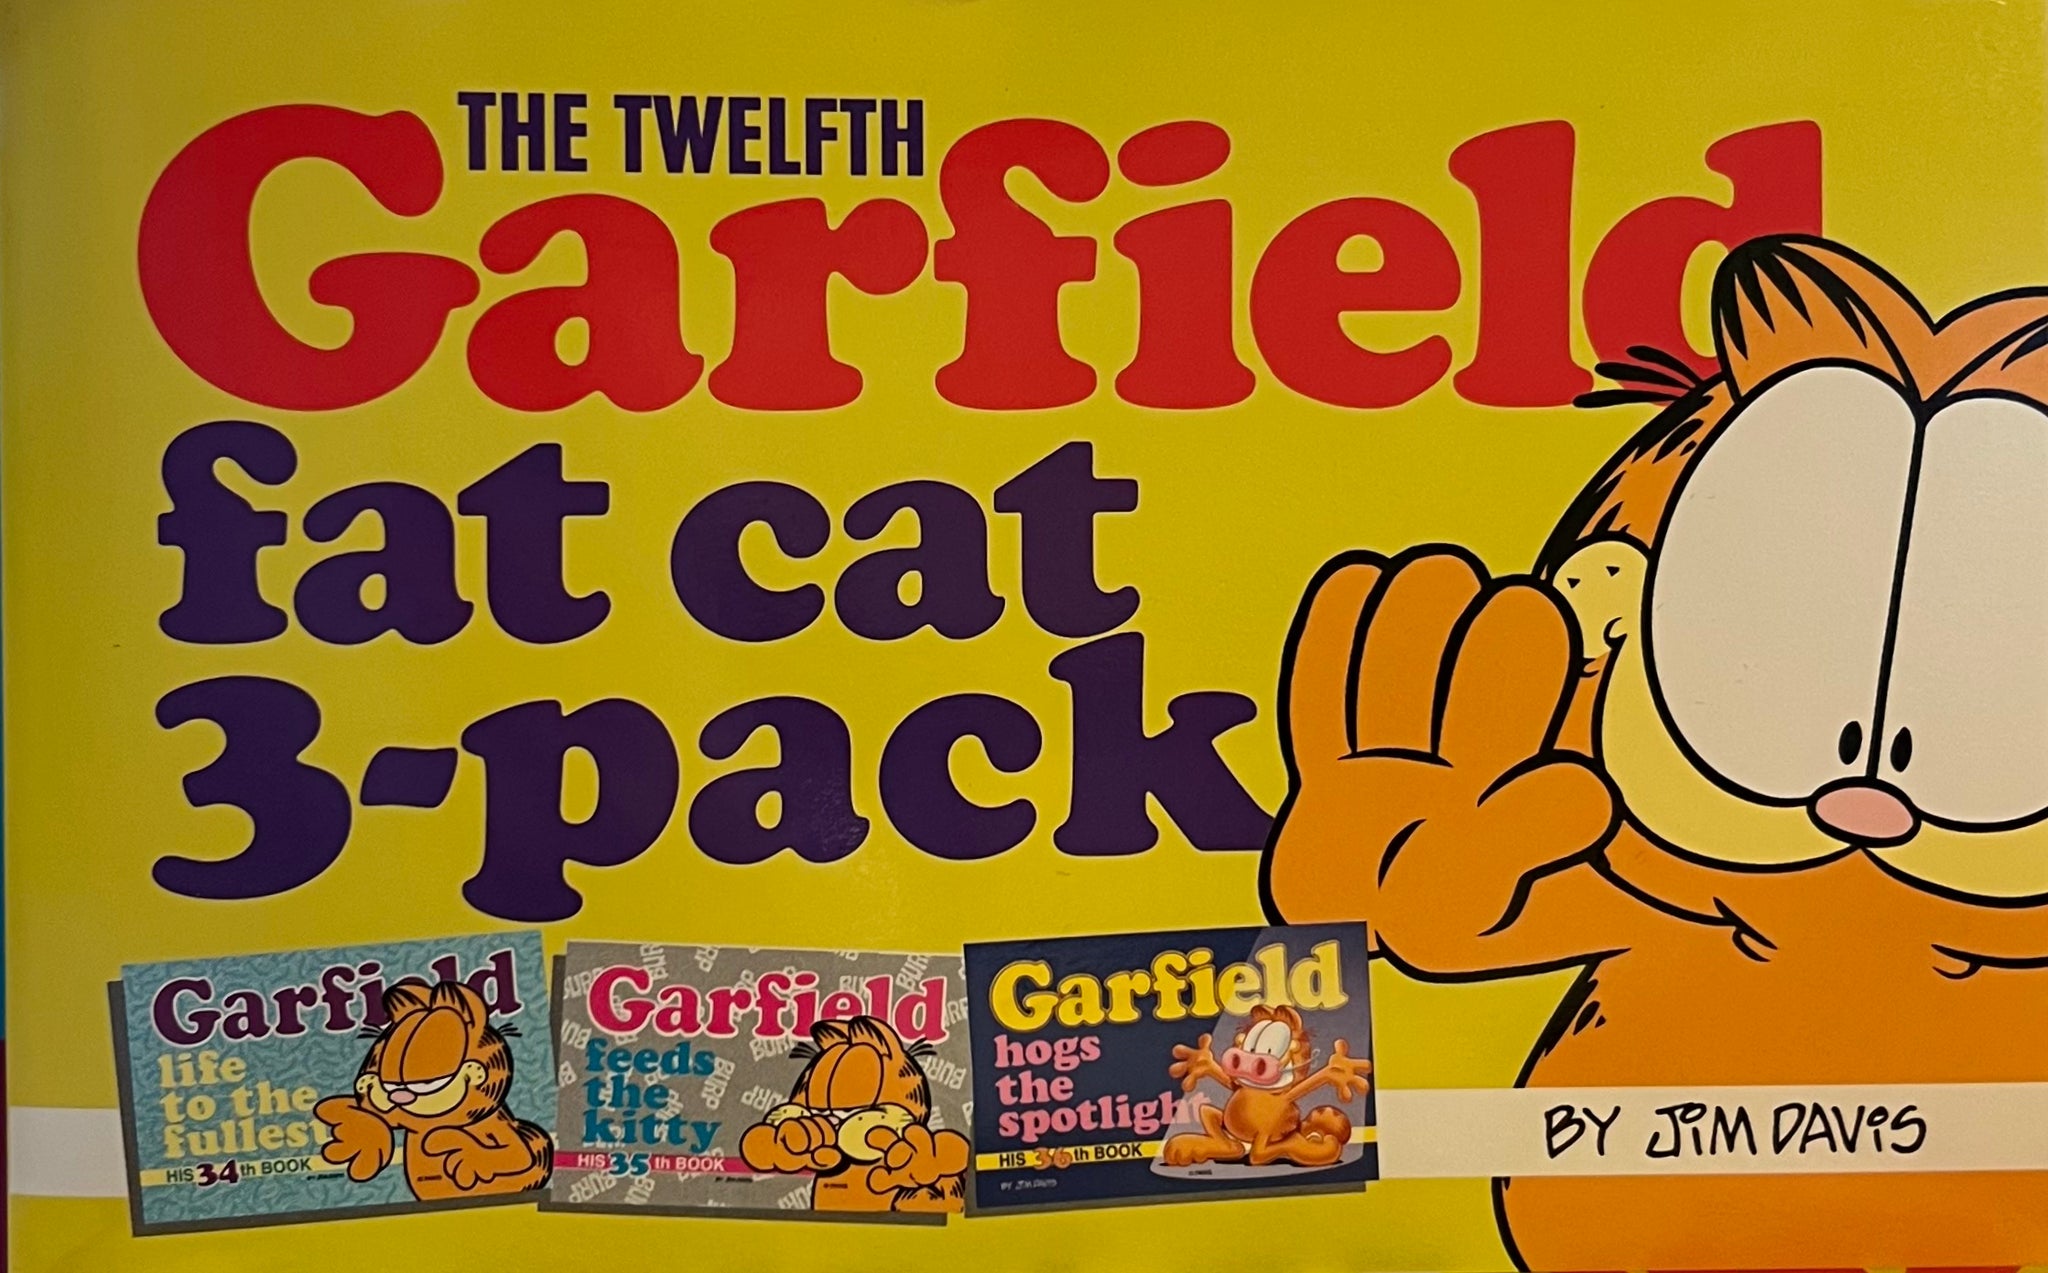 The Twelfth Garfield Fat Cat 3-Pack, Jim Davis